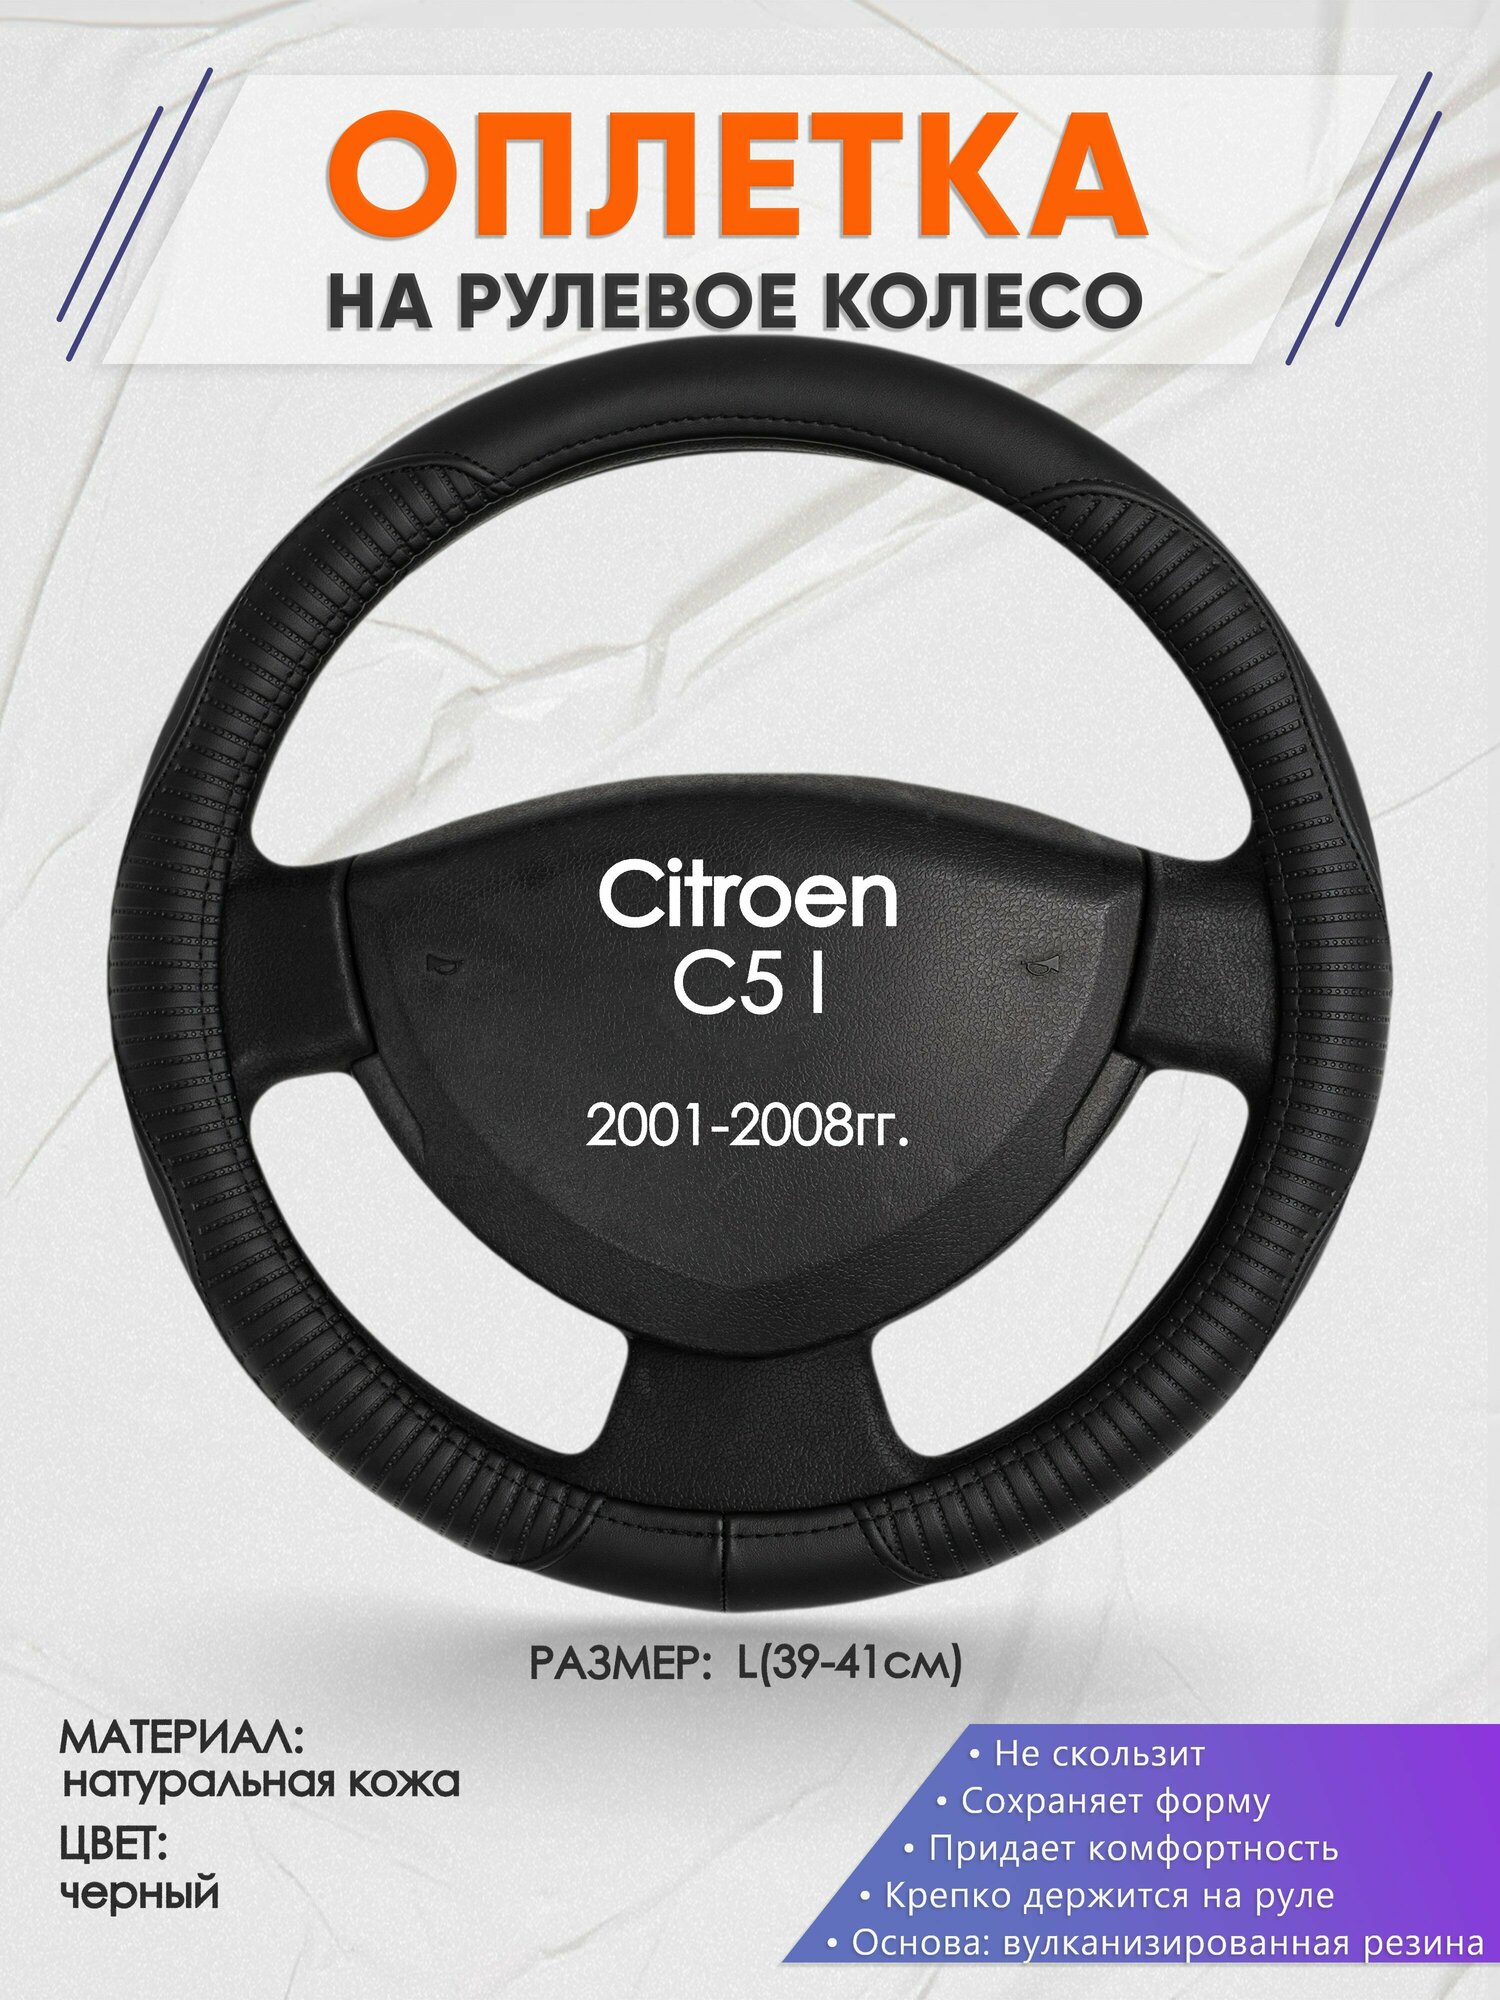 Оплетка на руль для Citroen C5 I(Ситроен С5 1 поколение) 2001-2008 L(39-41см) Натуральная кожа 29